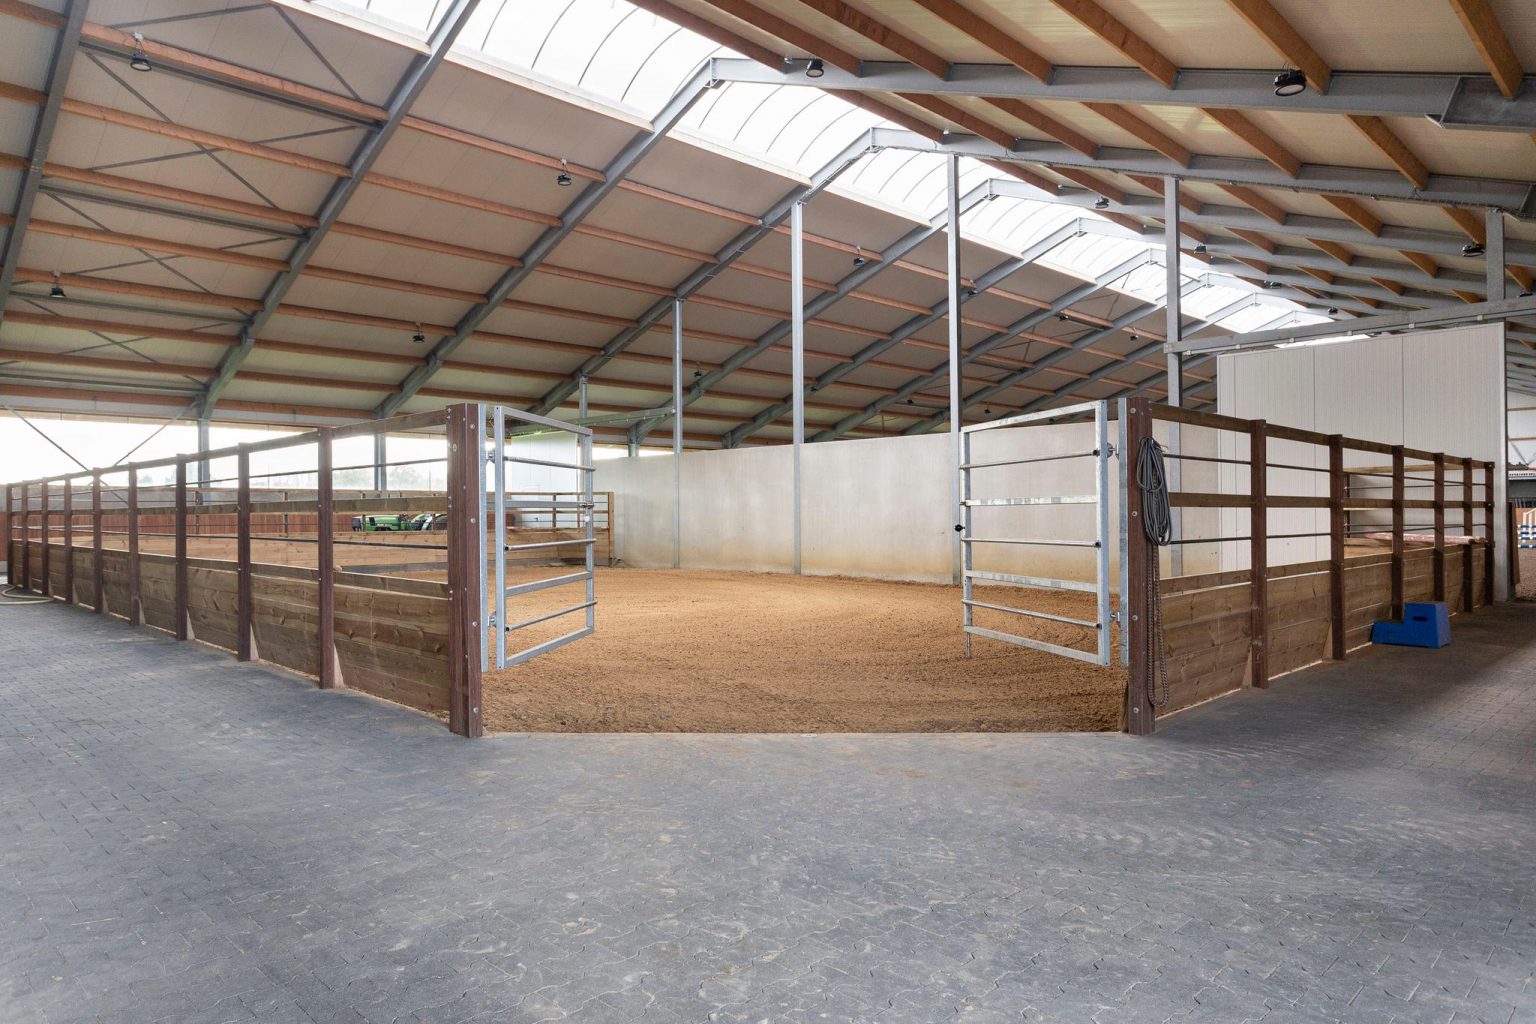 Toeval publiek campagne Compleet paardenbedrijf te koop - Van Santvoort Makelaars